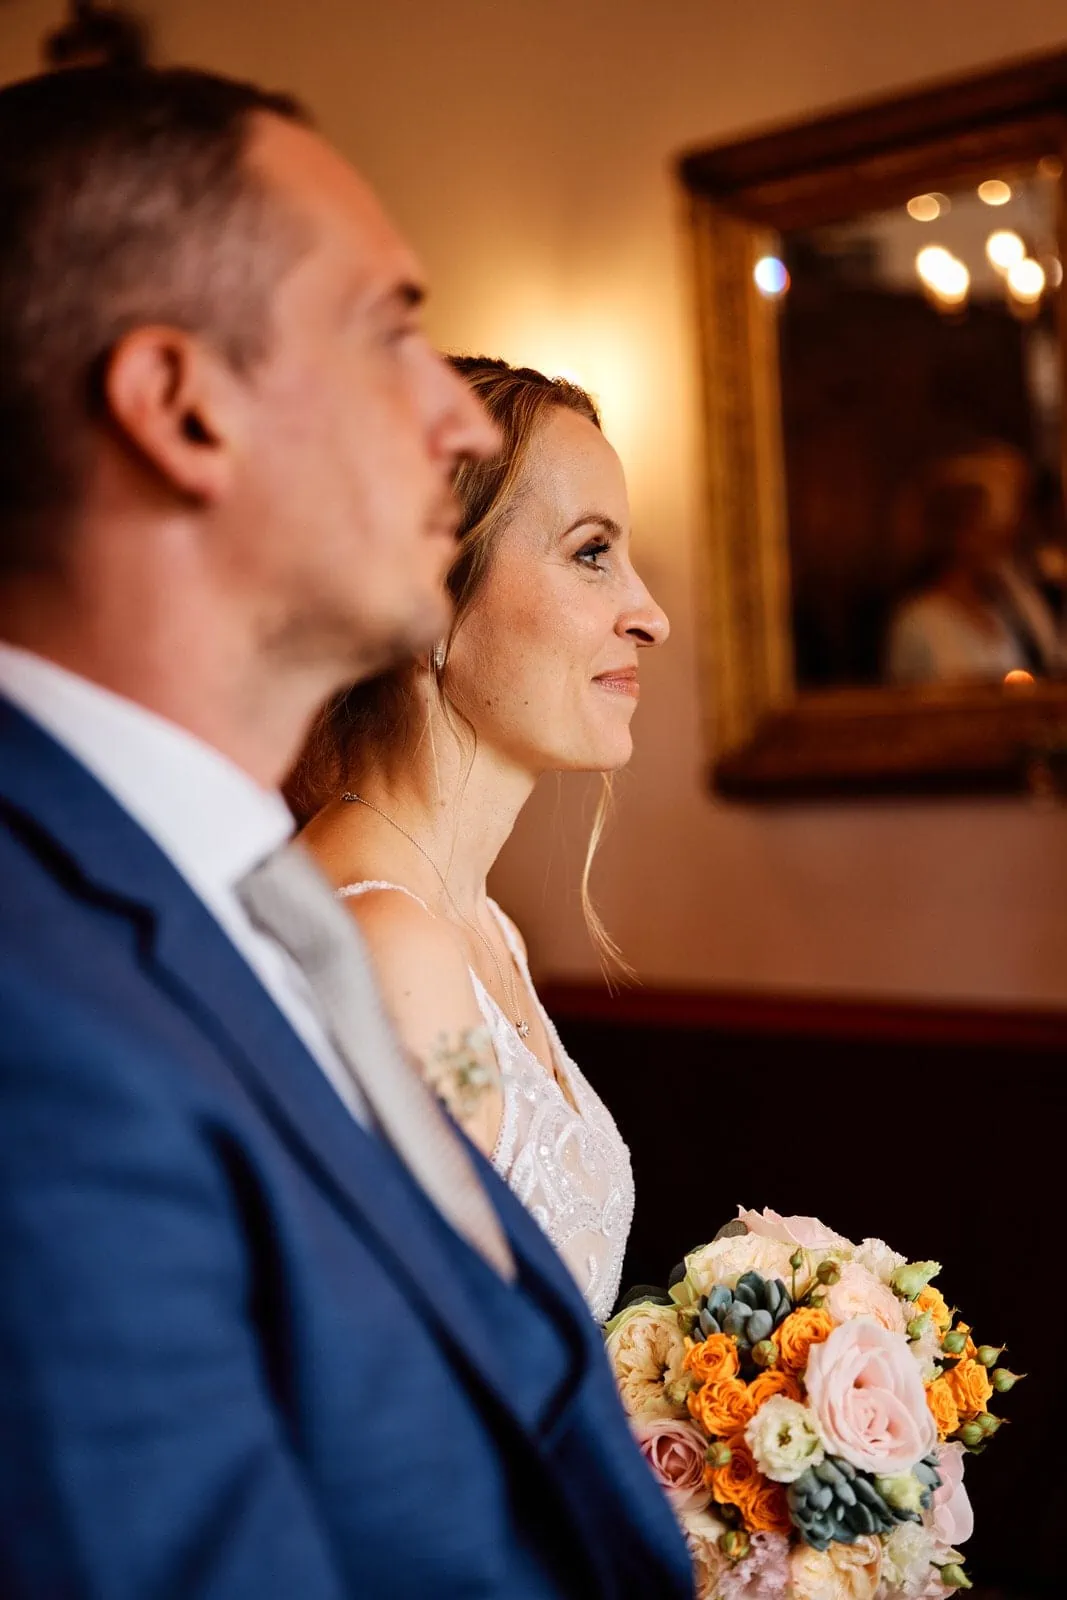 Die Braut ist im Fokus, der Bräutigam sitzt neben ihr und ist unscharf im Vordergrund zu sehen. Sie trägt ihren Brautstrauß und lächelt.